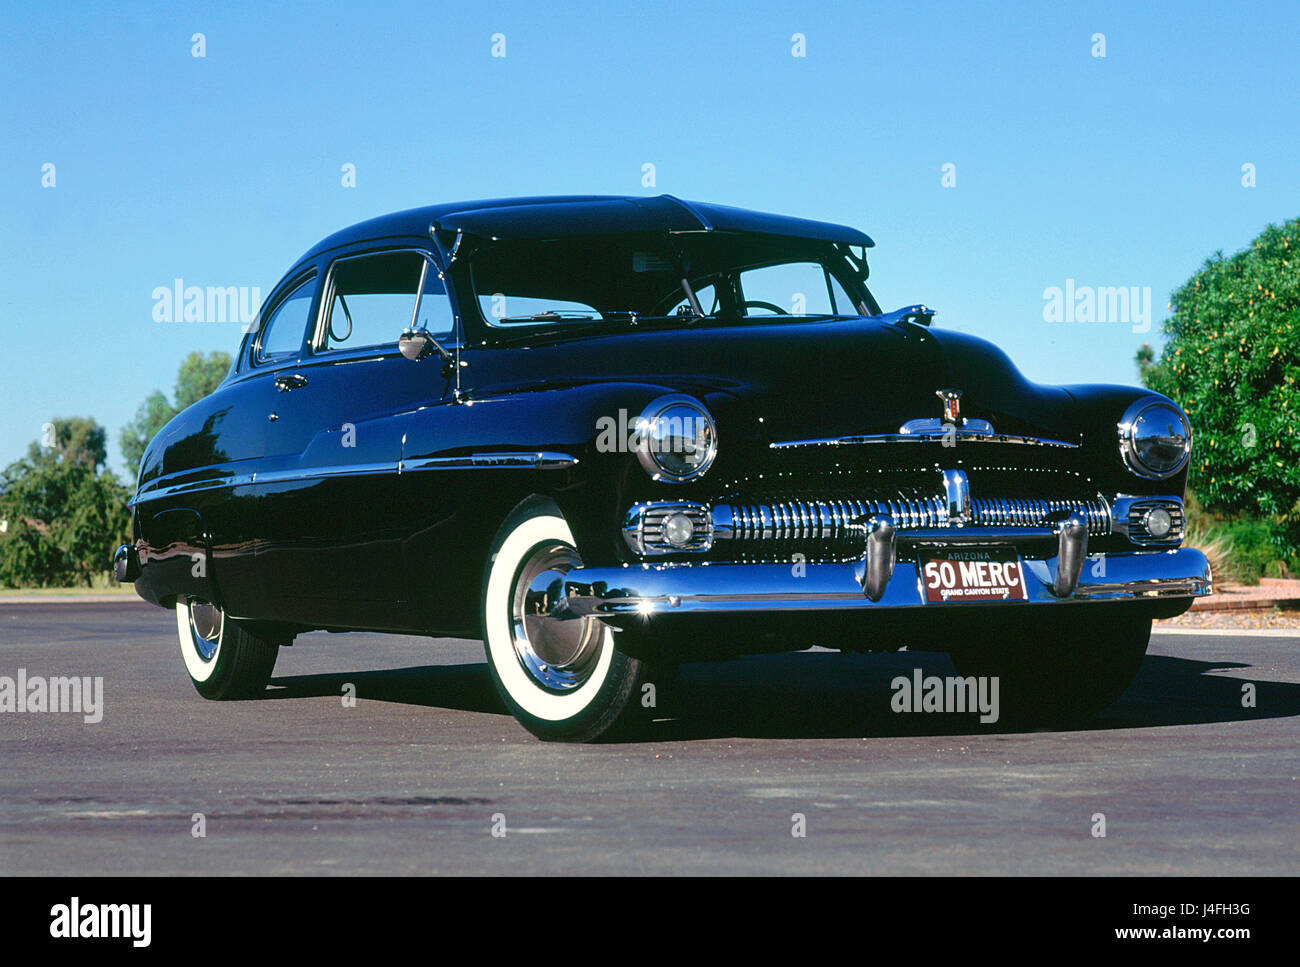 1950 Mercury coupe Stock Photo